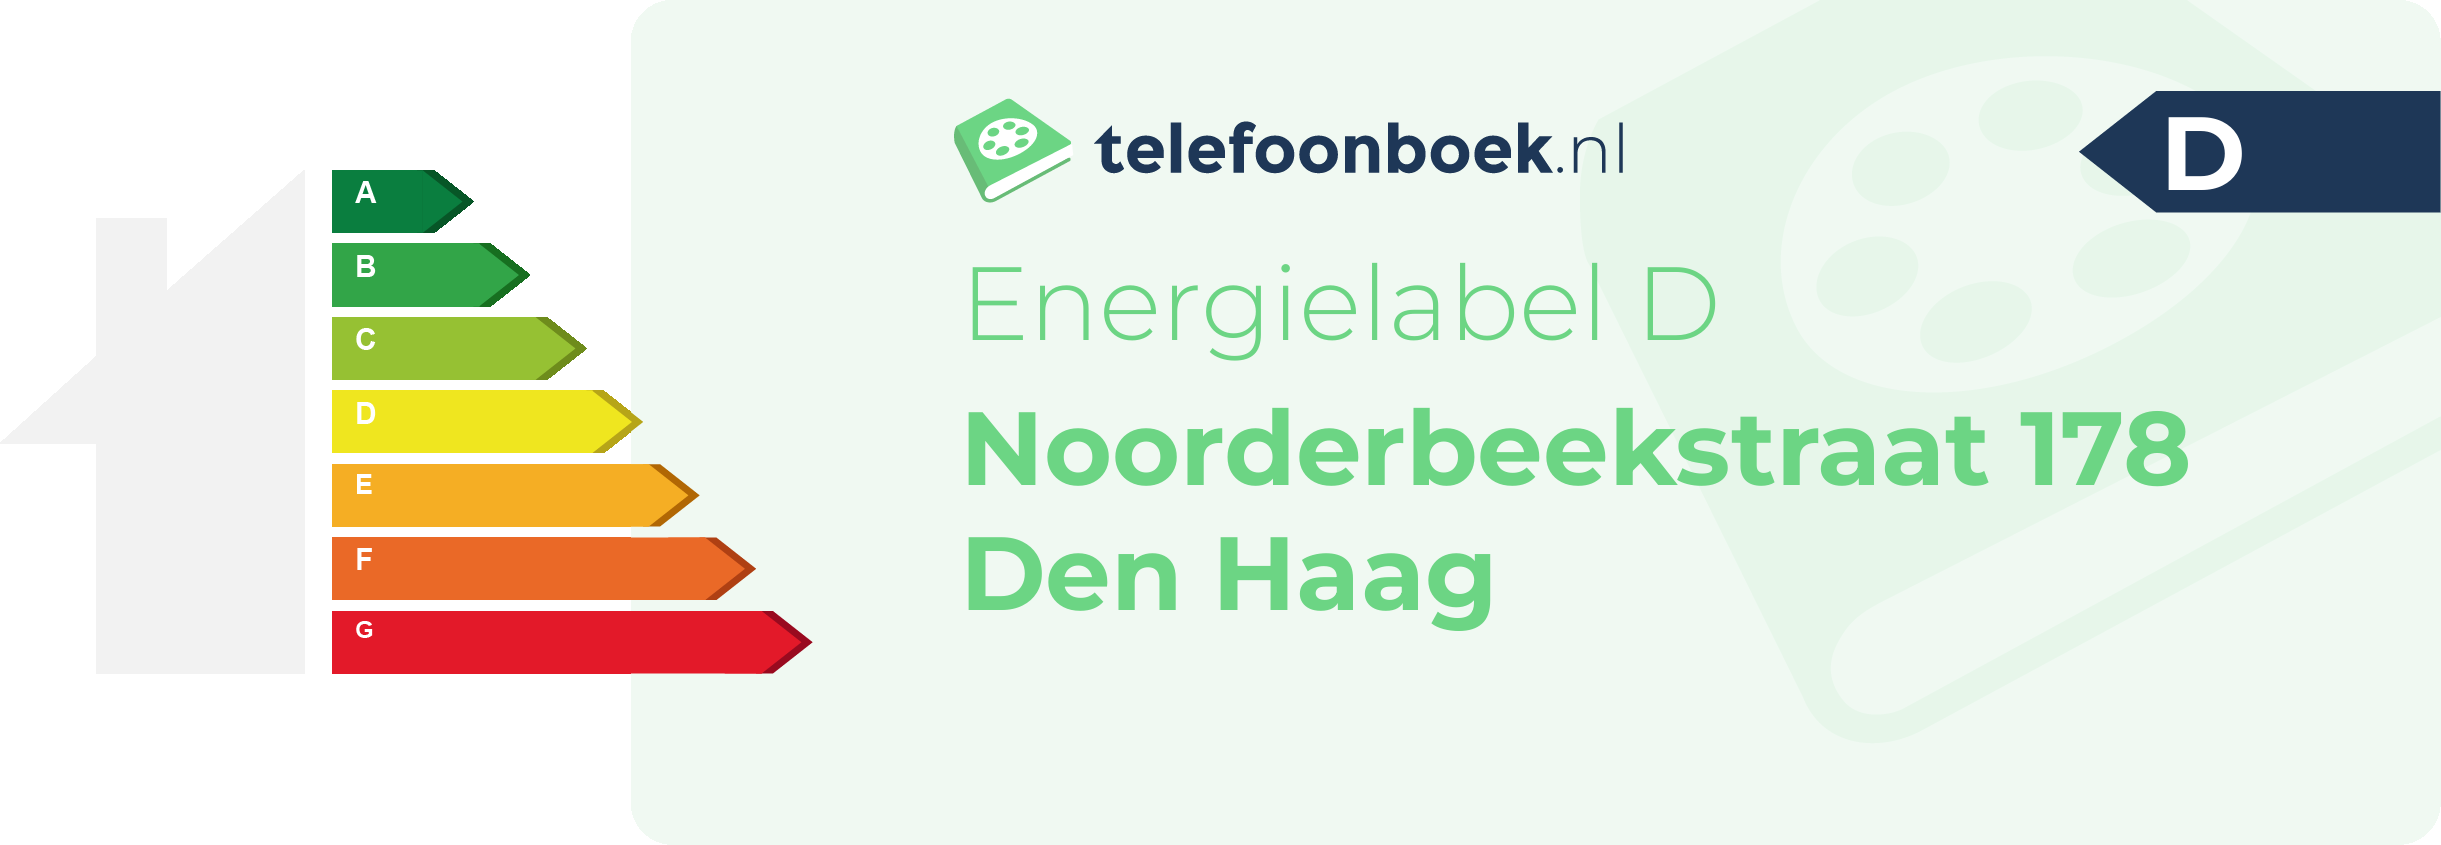 Energielabel Noorderbeekstraat 178 Den Haag